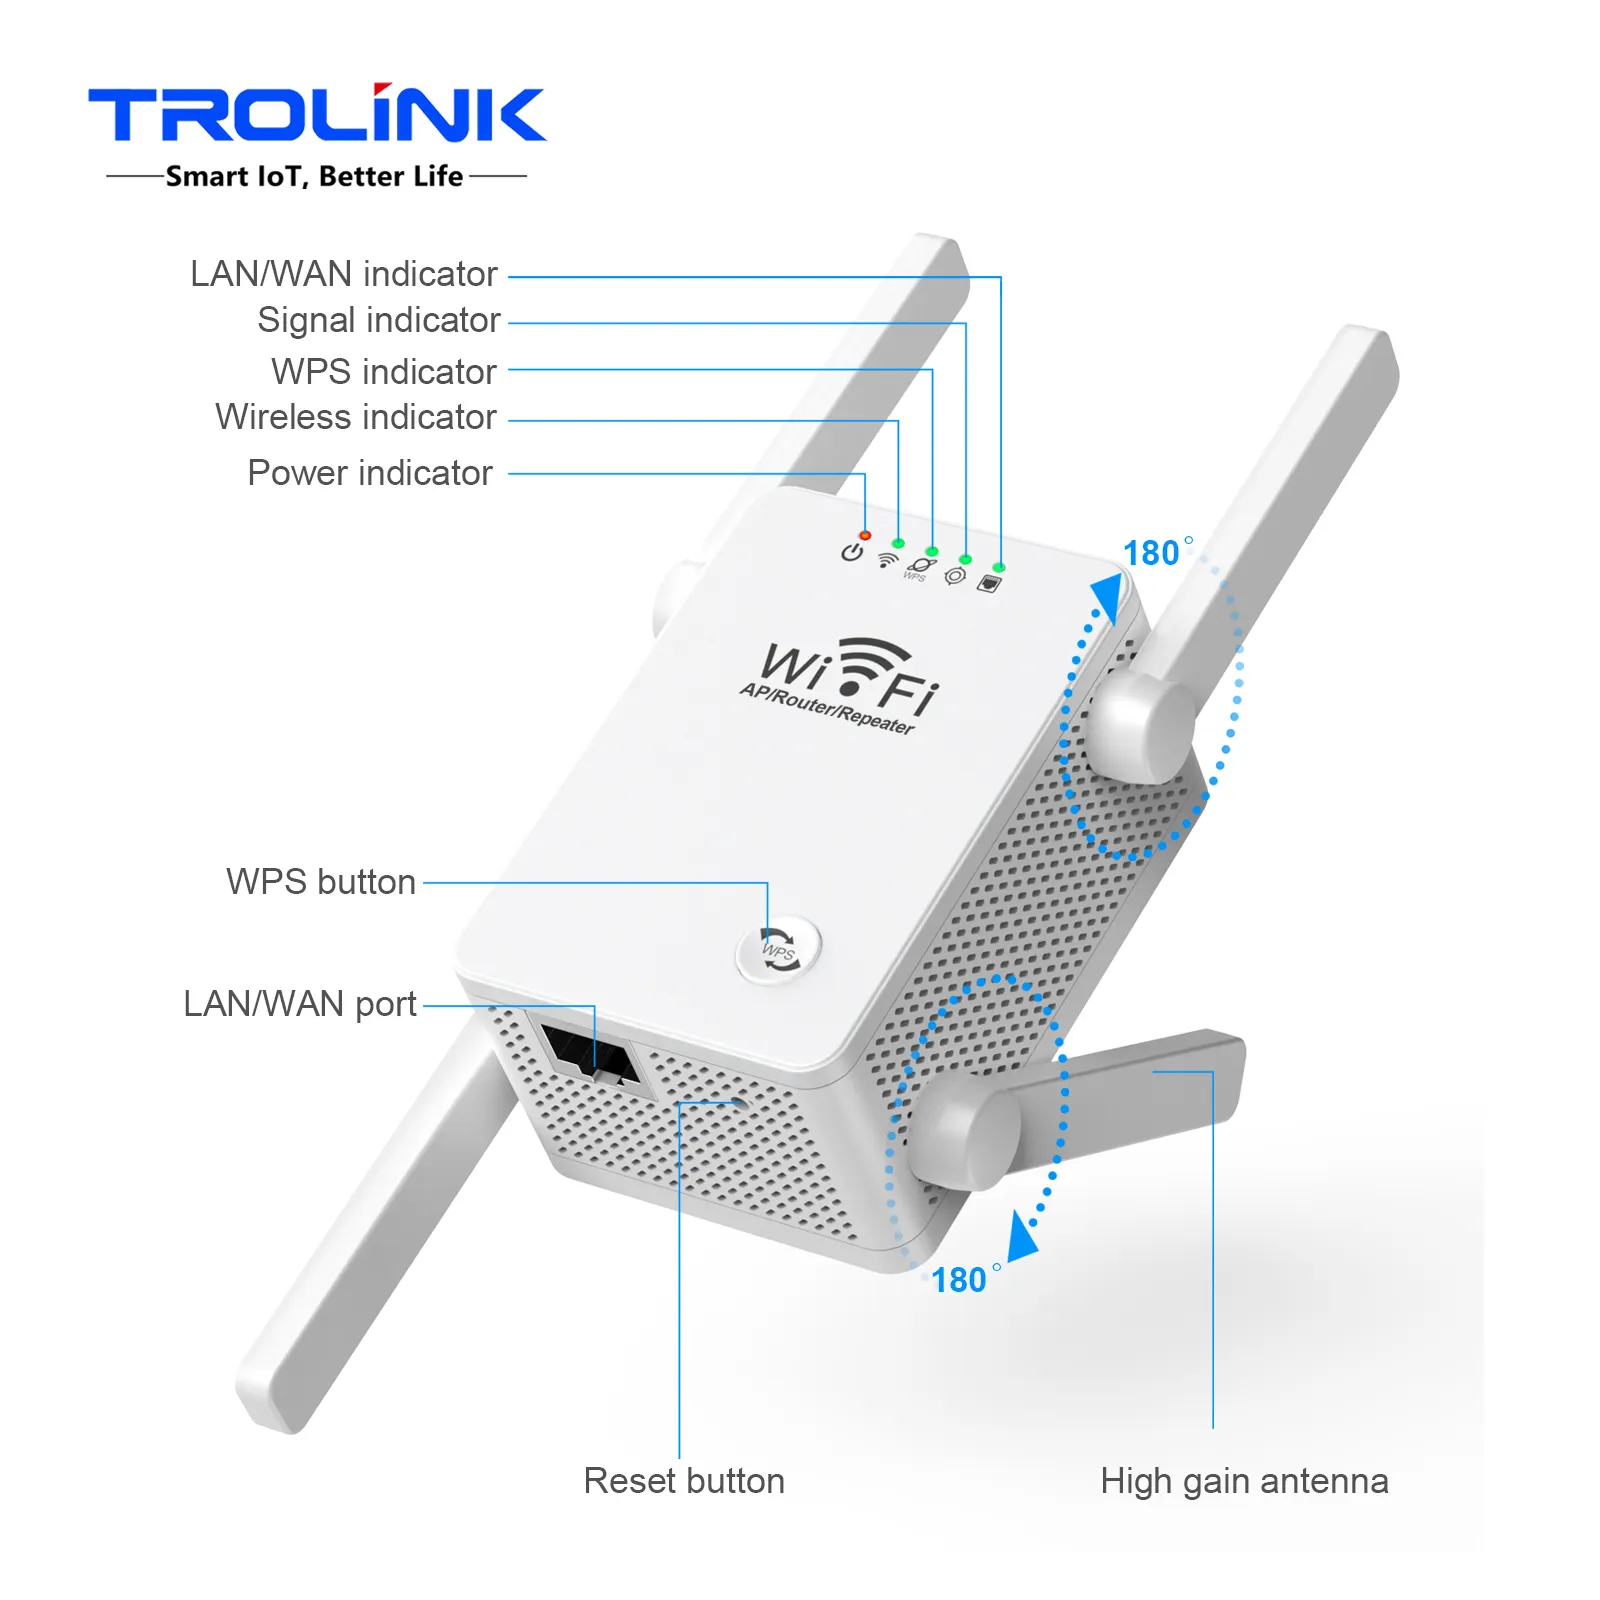 TROLINK WiFi Range Repetidor Wireless 300M 2.4G WiFi Outdoor WPS WiFi Repeater Extender Wireless